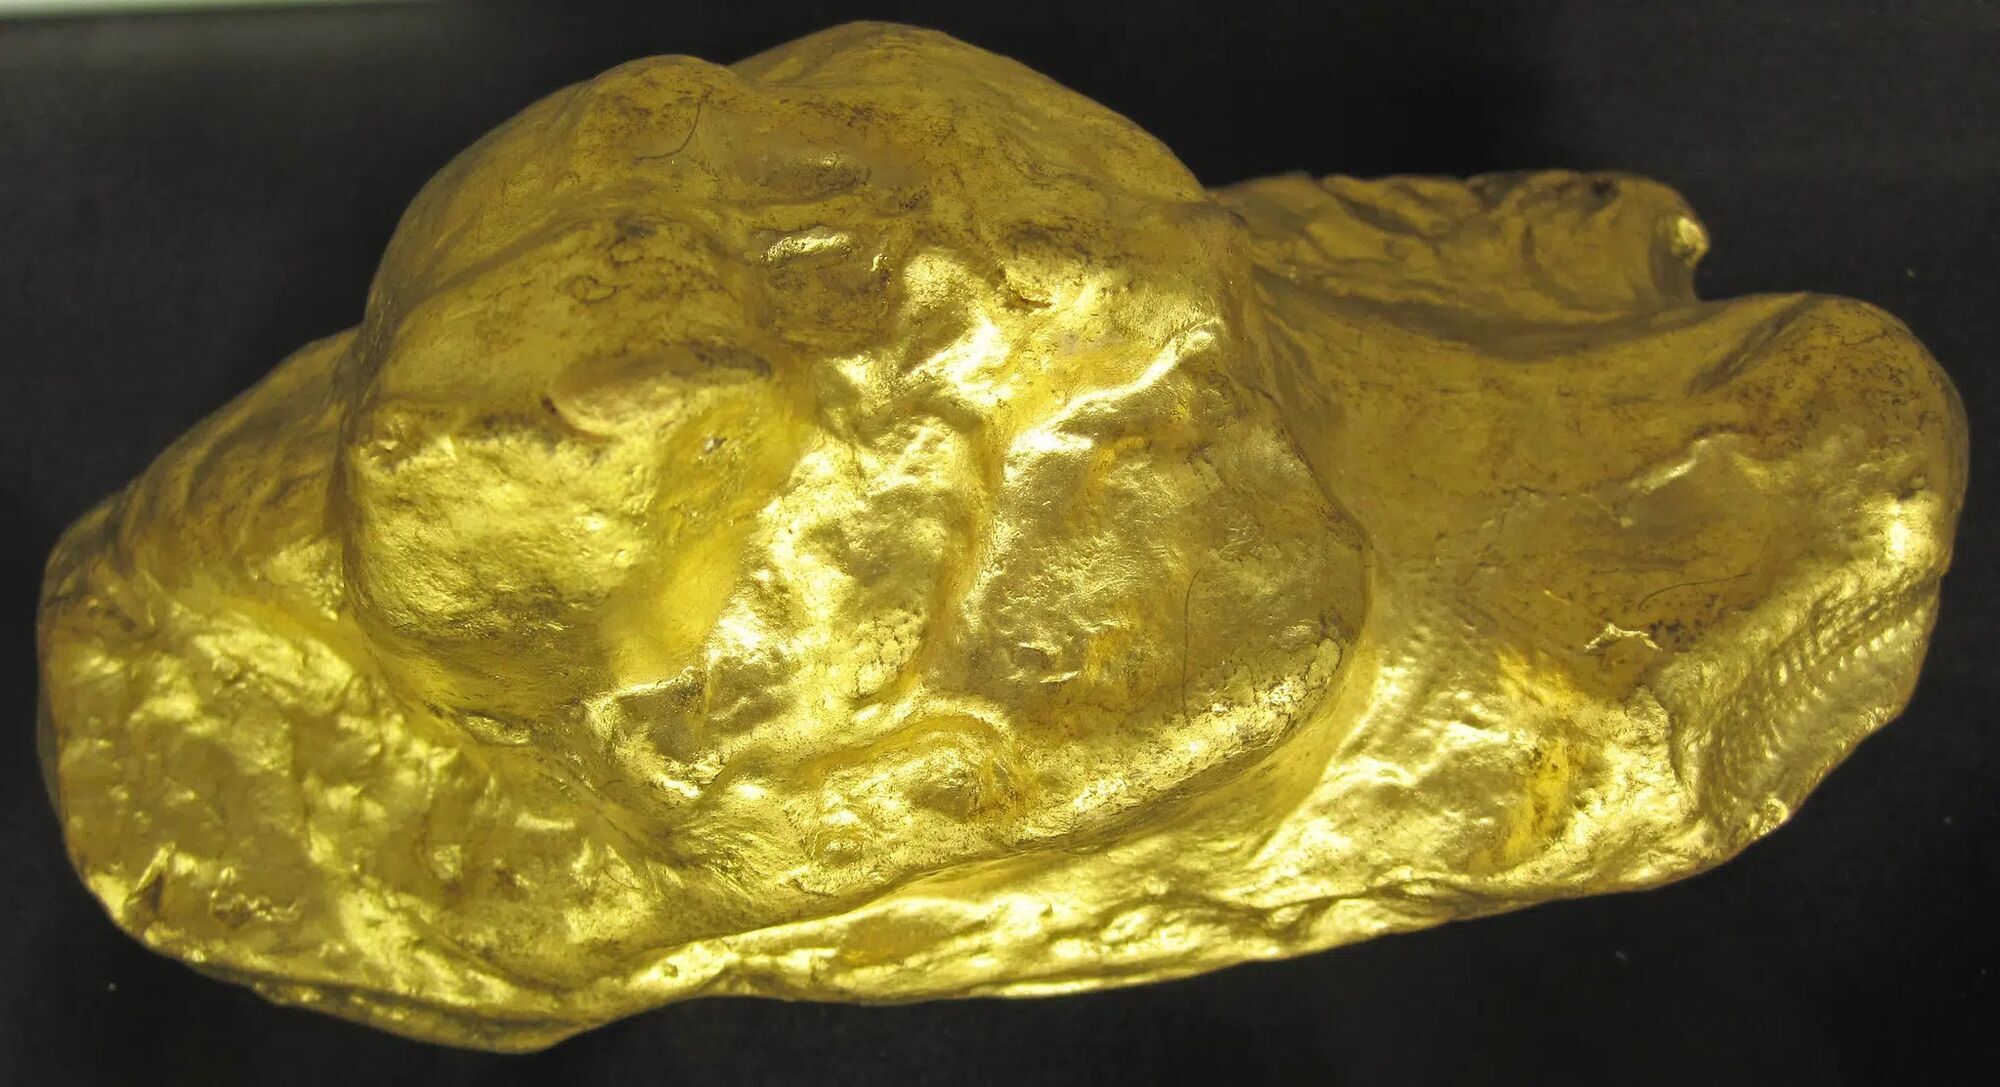 Пенсионер с неисправным металлоискателем нашел самый большой самородок золота в Англии (фото)